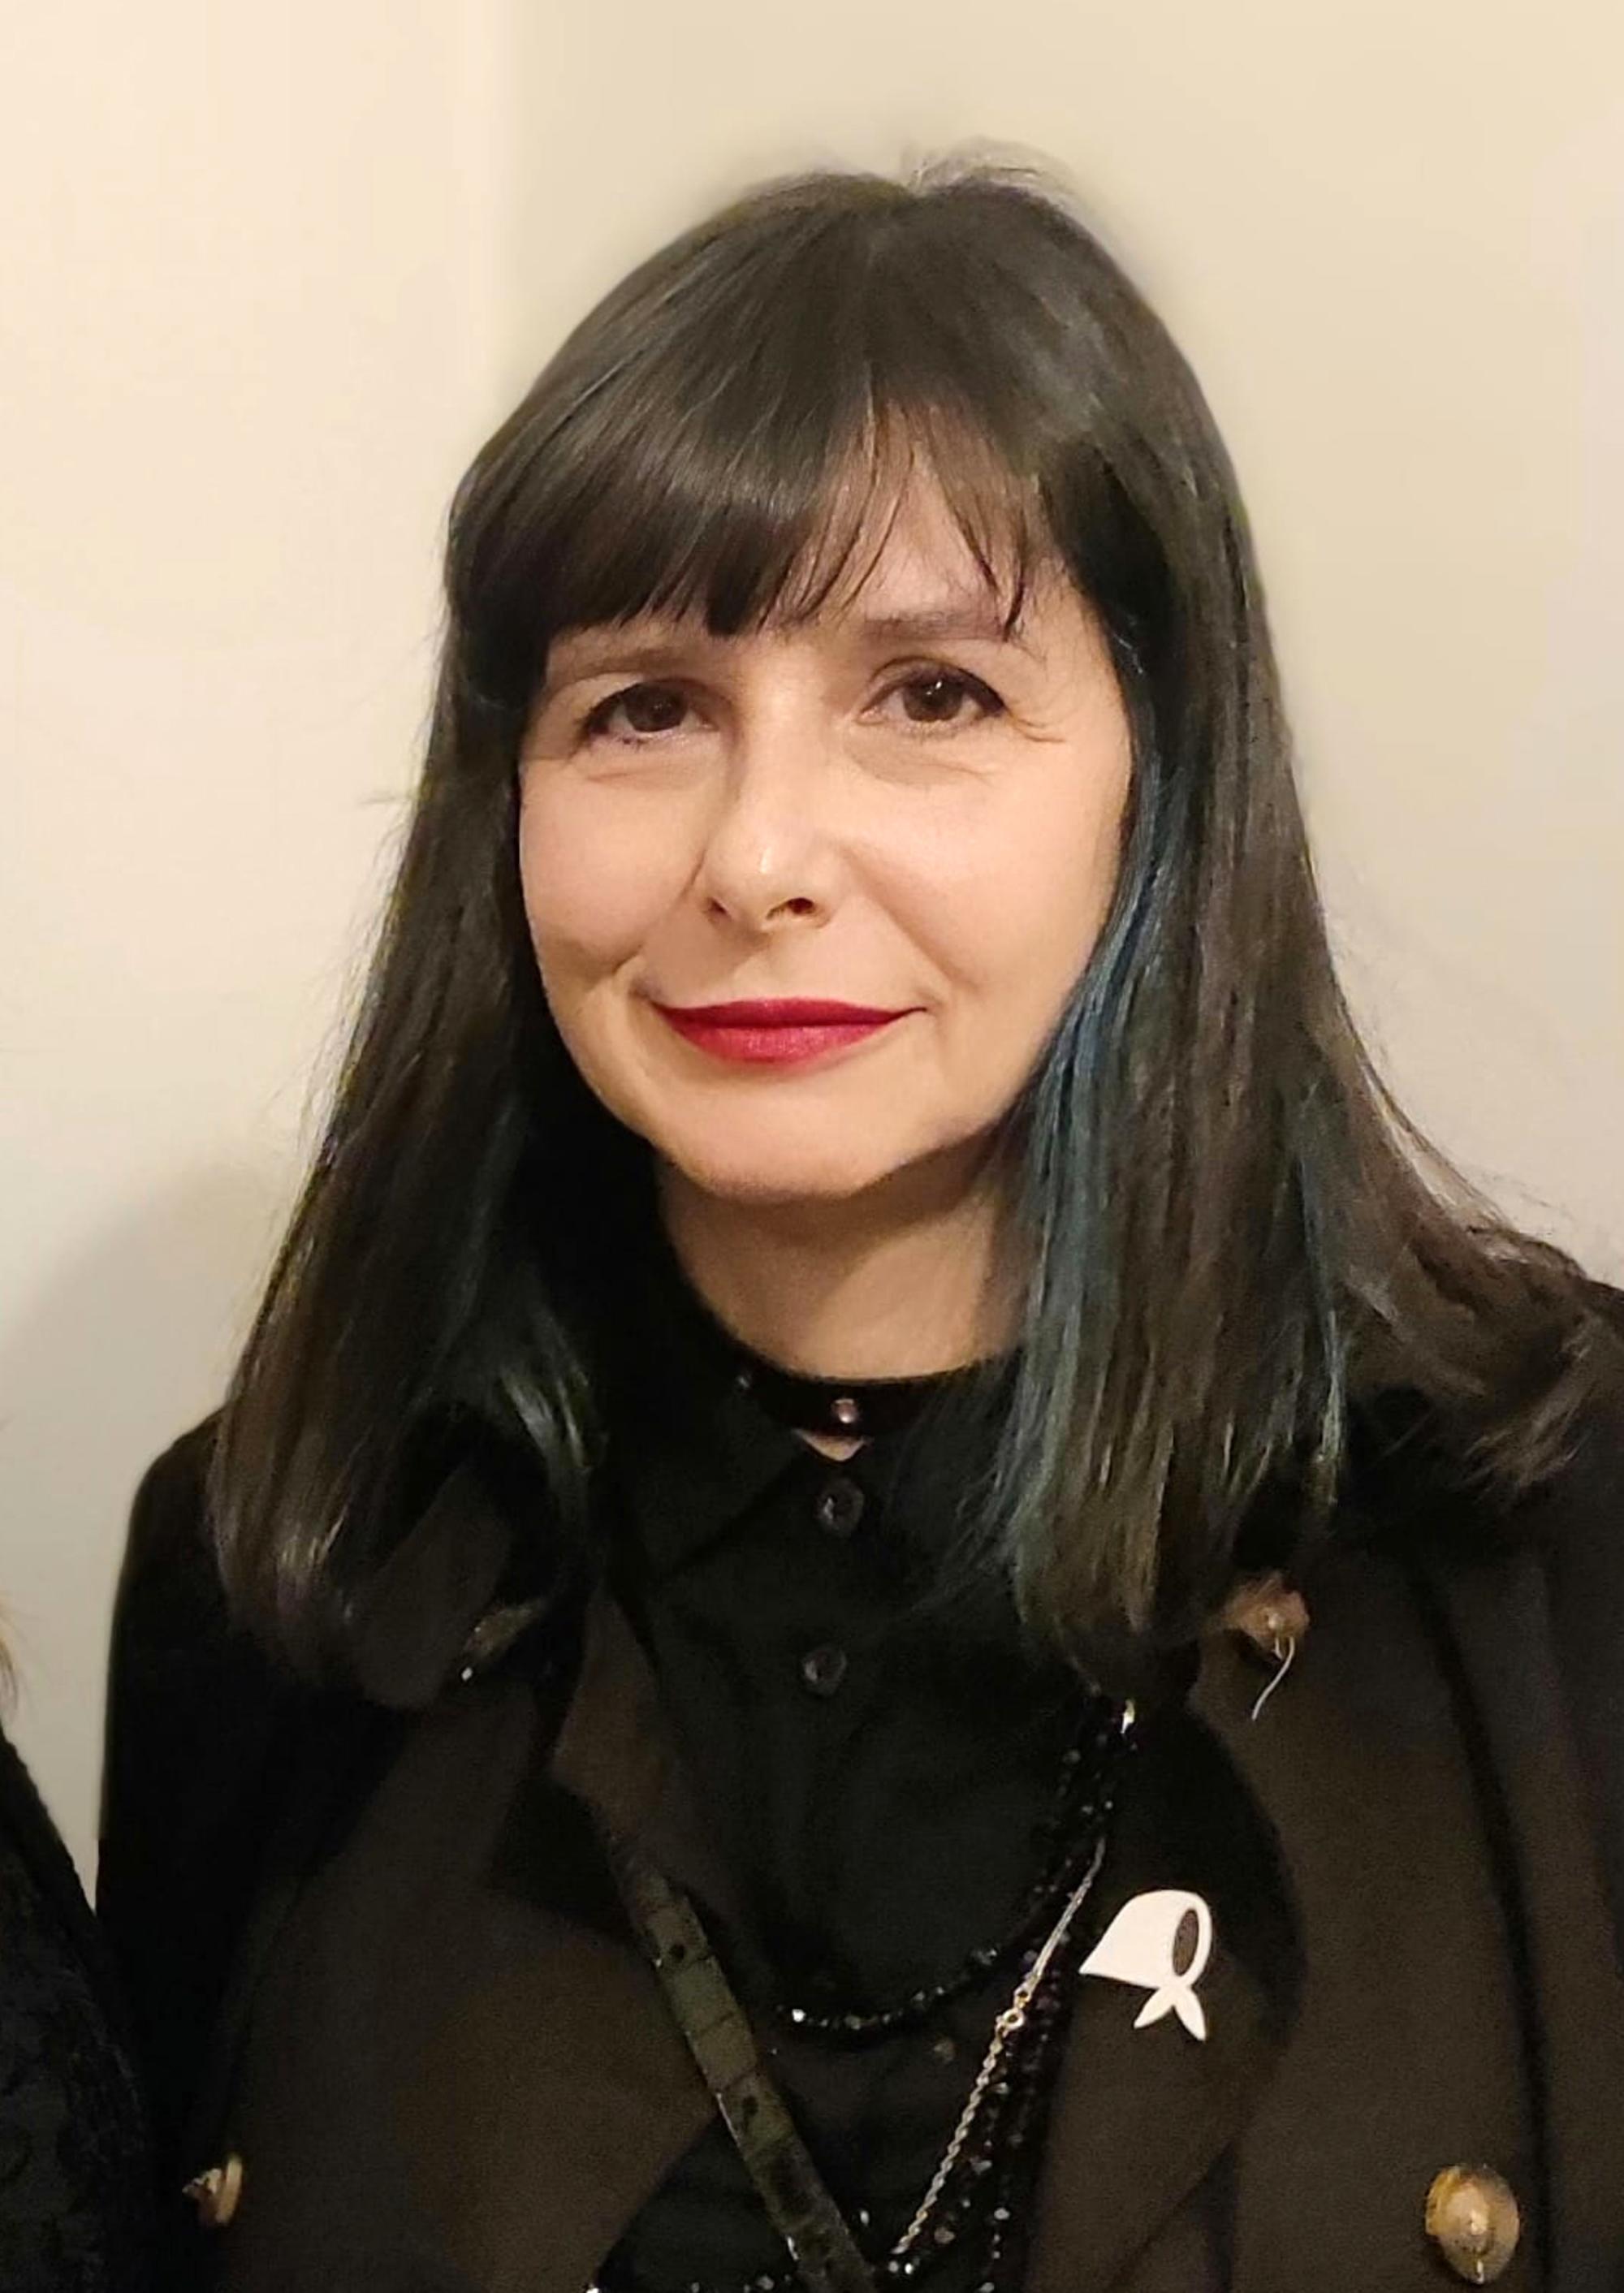 Lisa Maracani